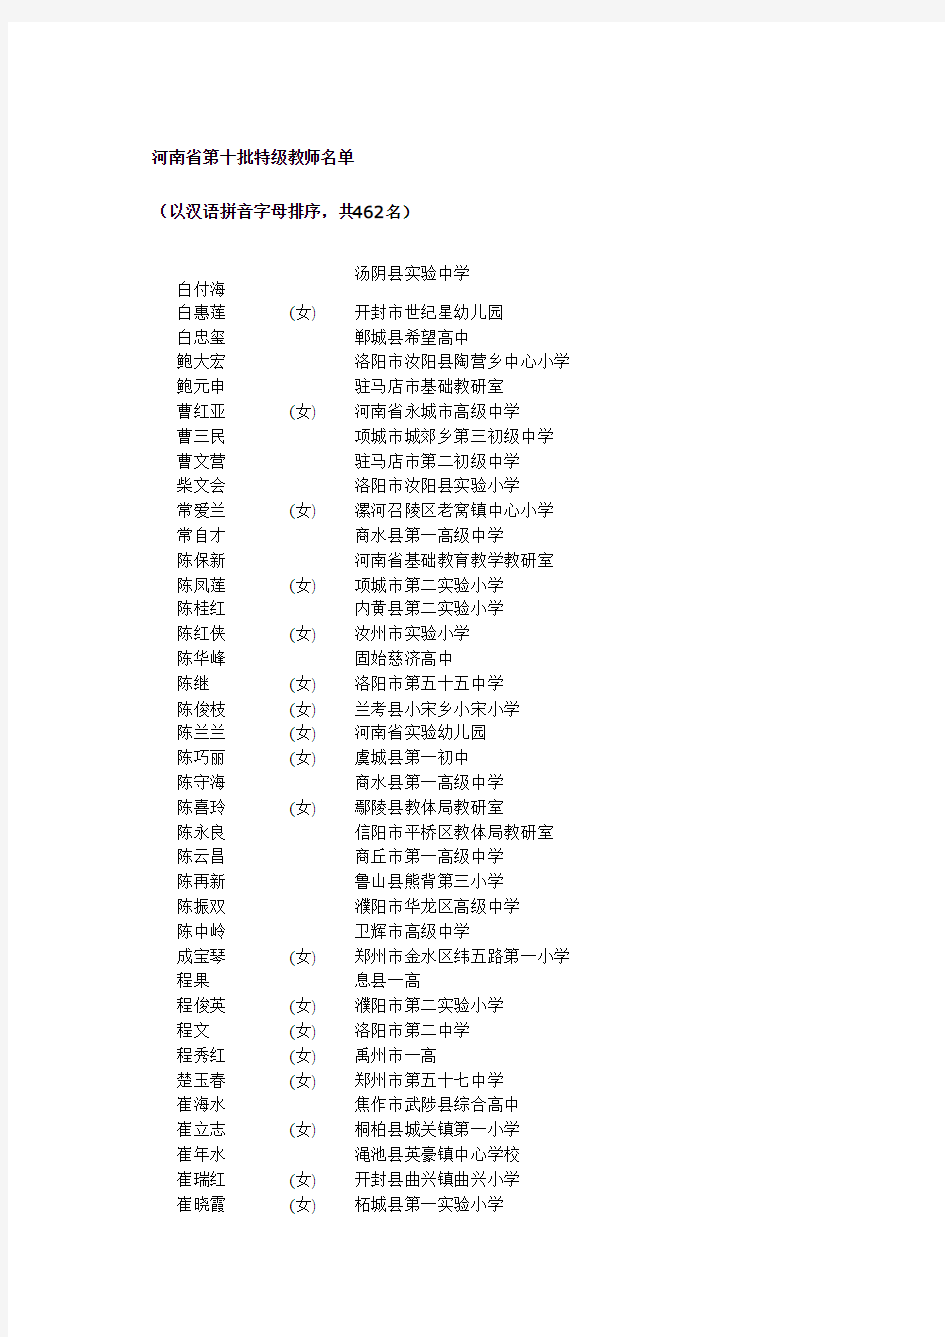 河南省第十批特级教师名单(2010)